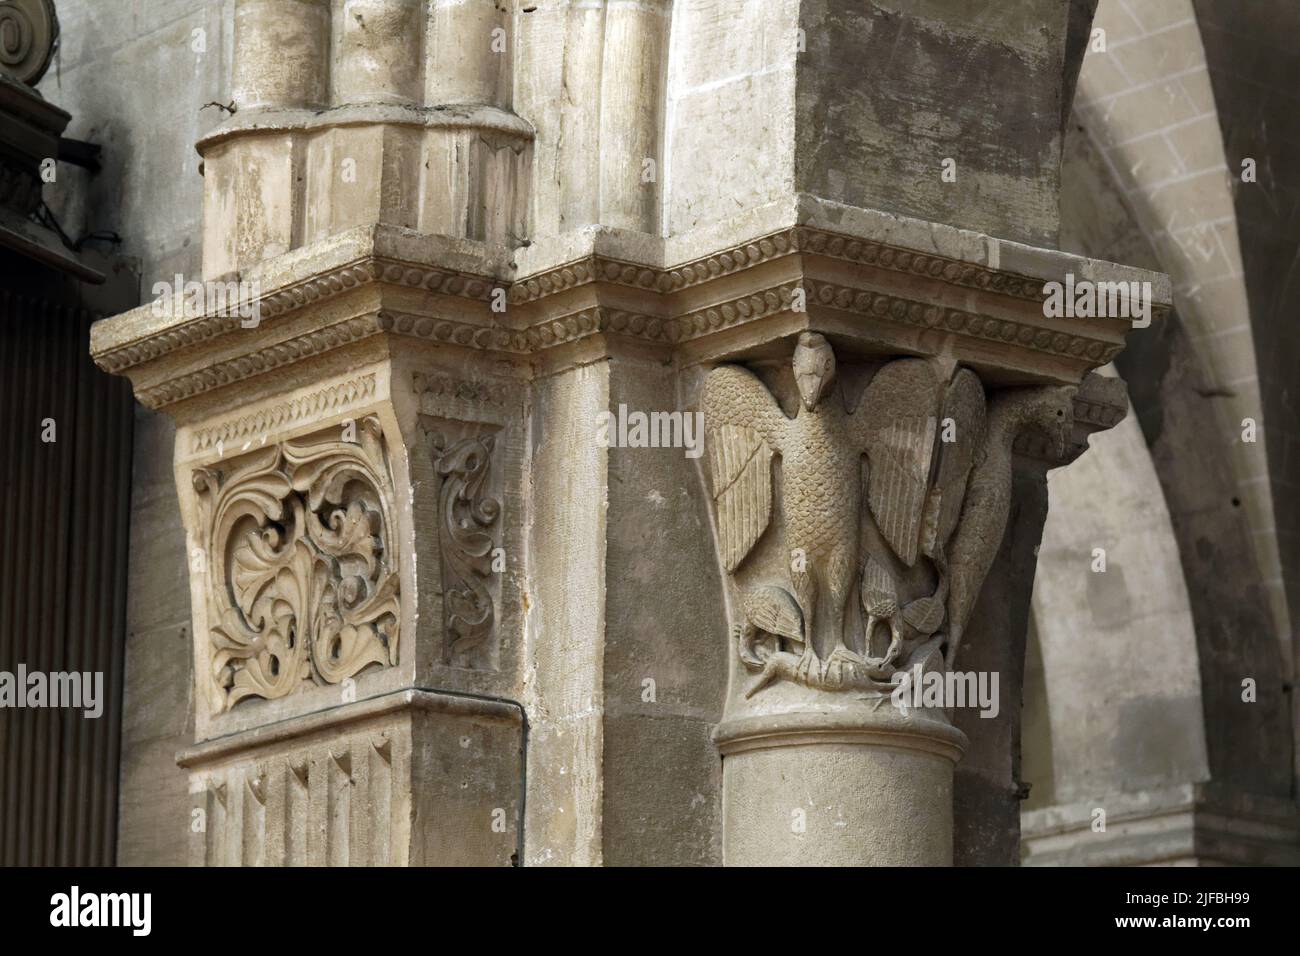 France, Saone et Loire, Chalon sur Saone, Saint Vincent Square, Saint Vincent Cathedral, capitals Stock Photo